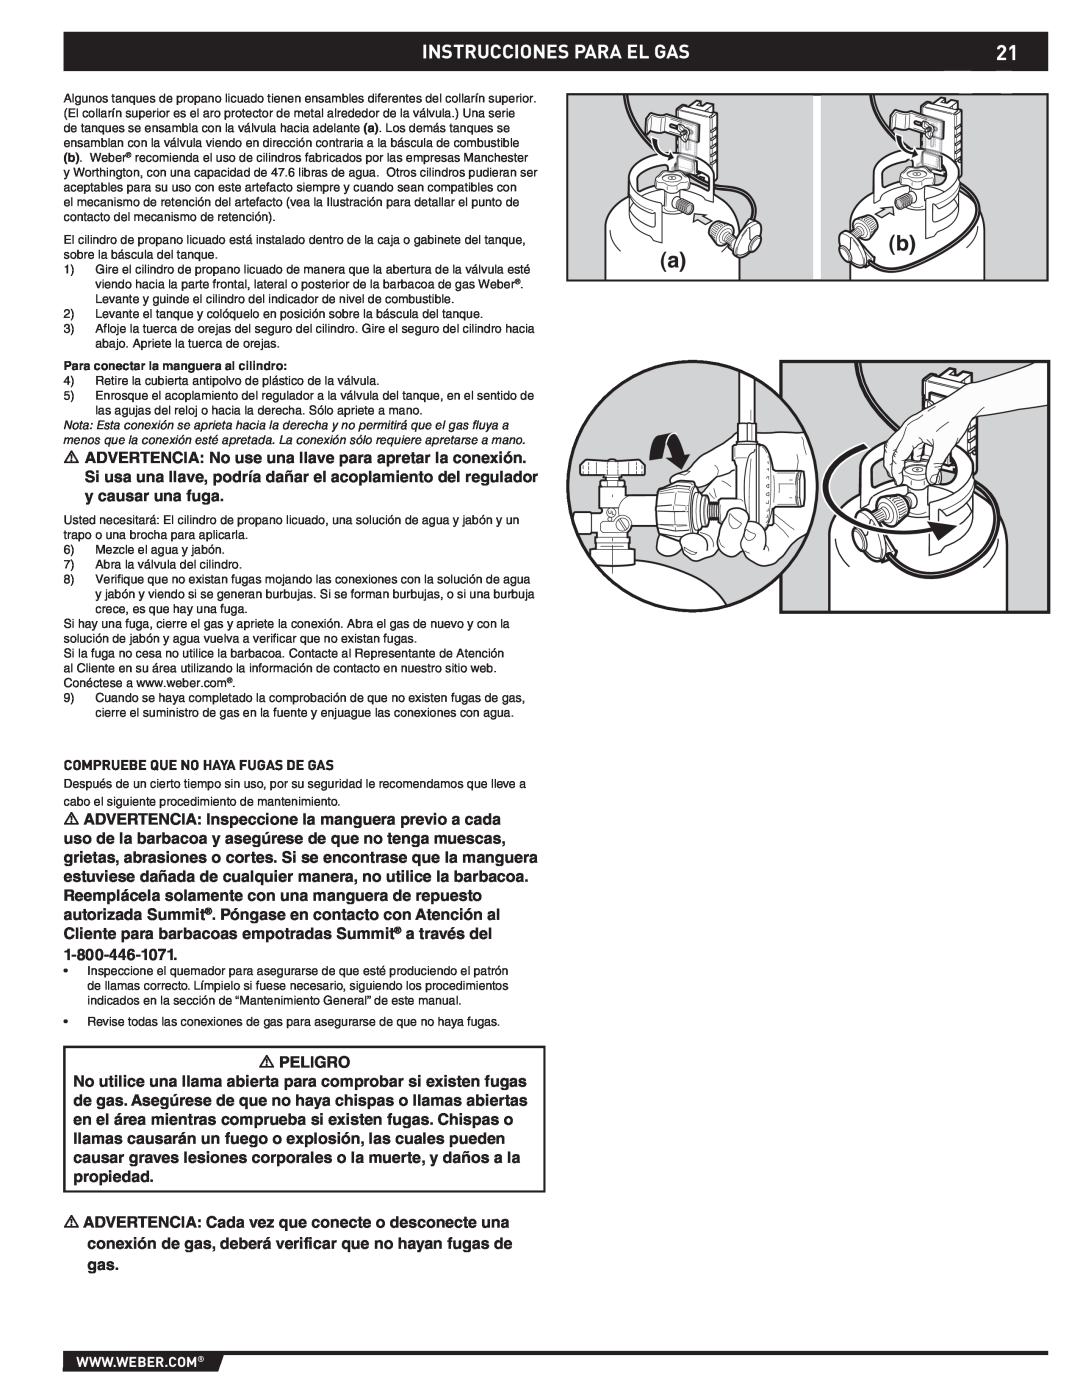 Weber 43176 manual Instrucciones Para El Gas, Peligro 